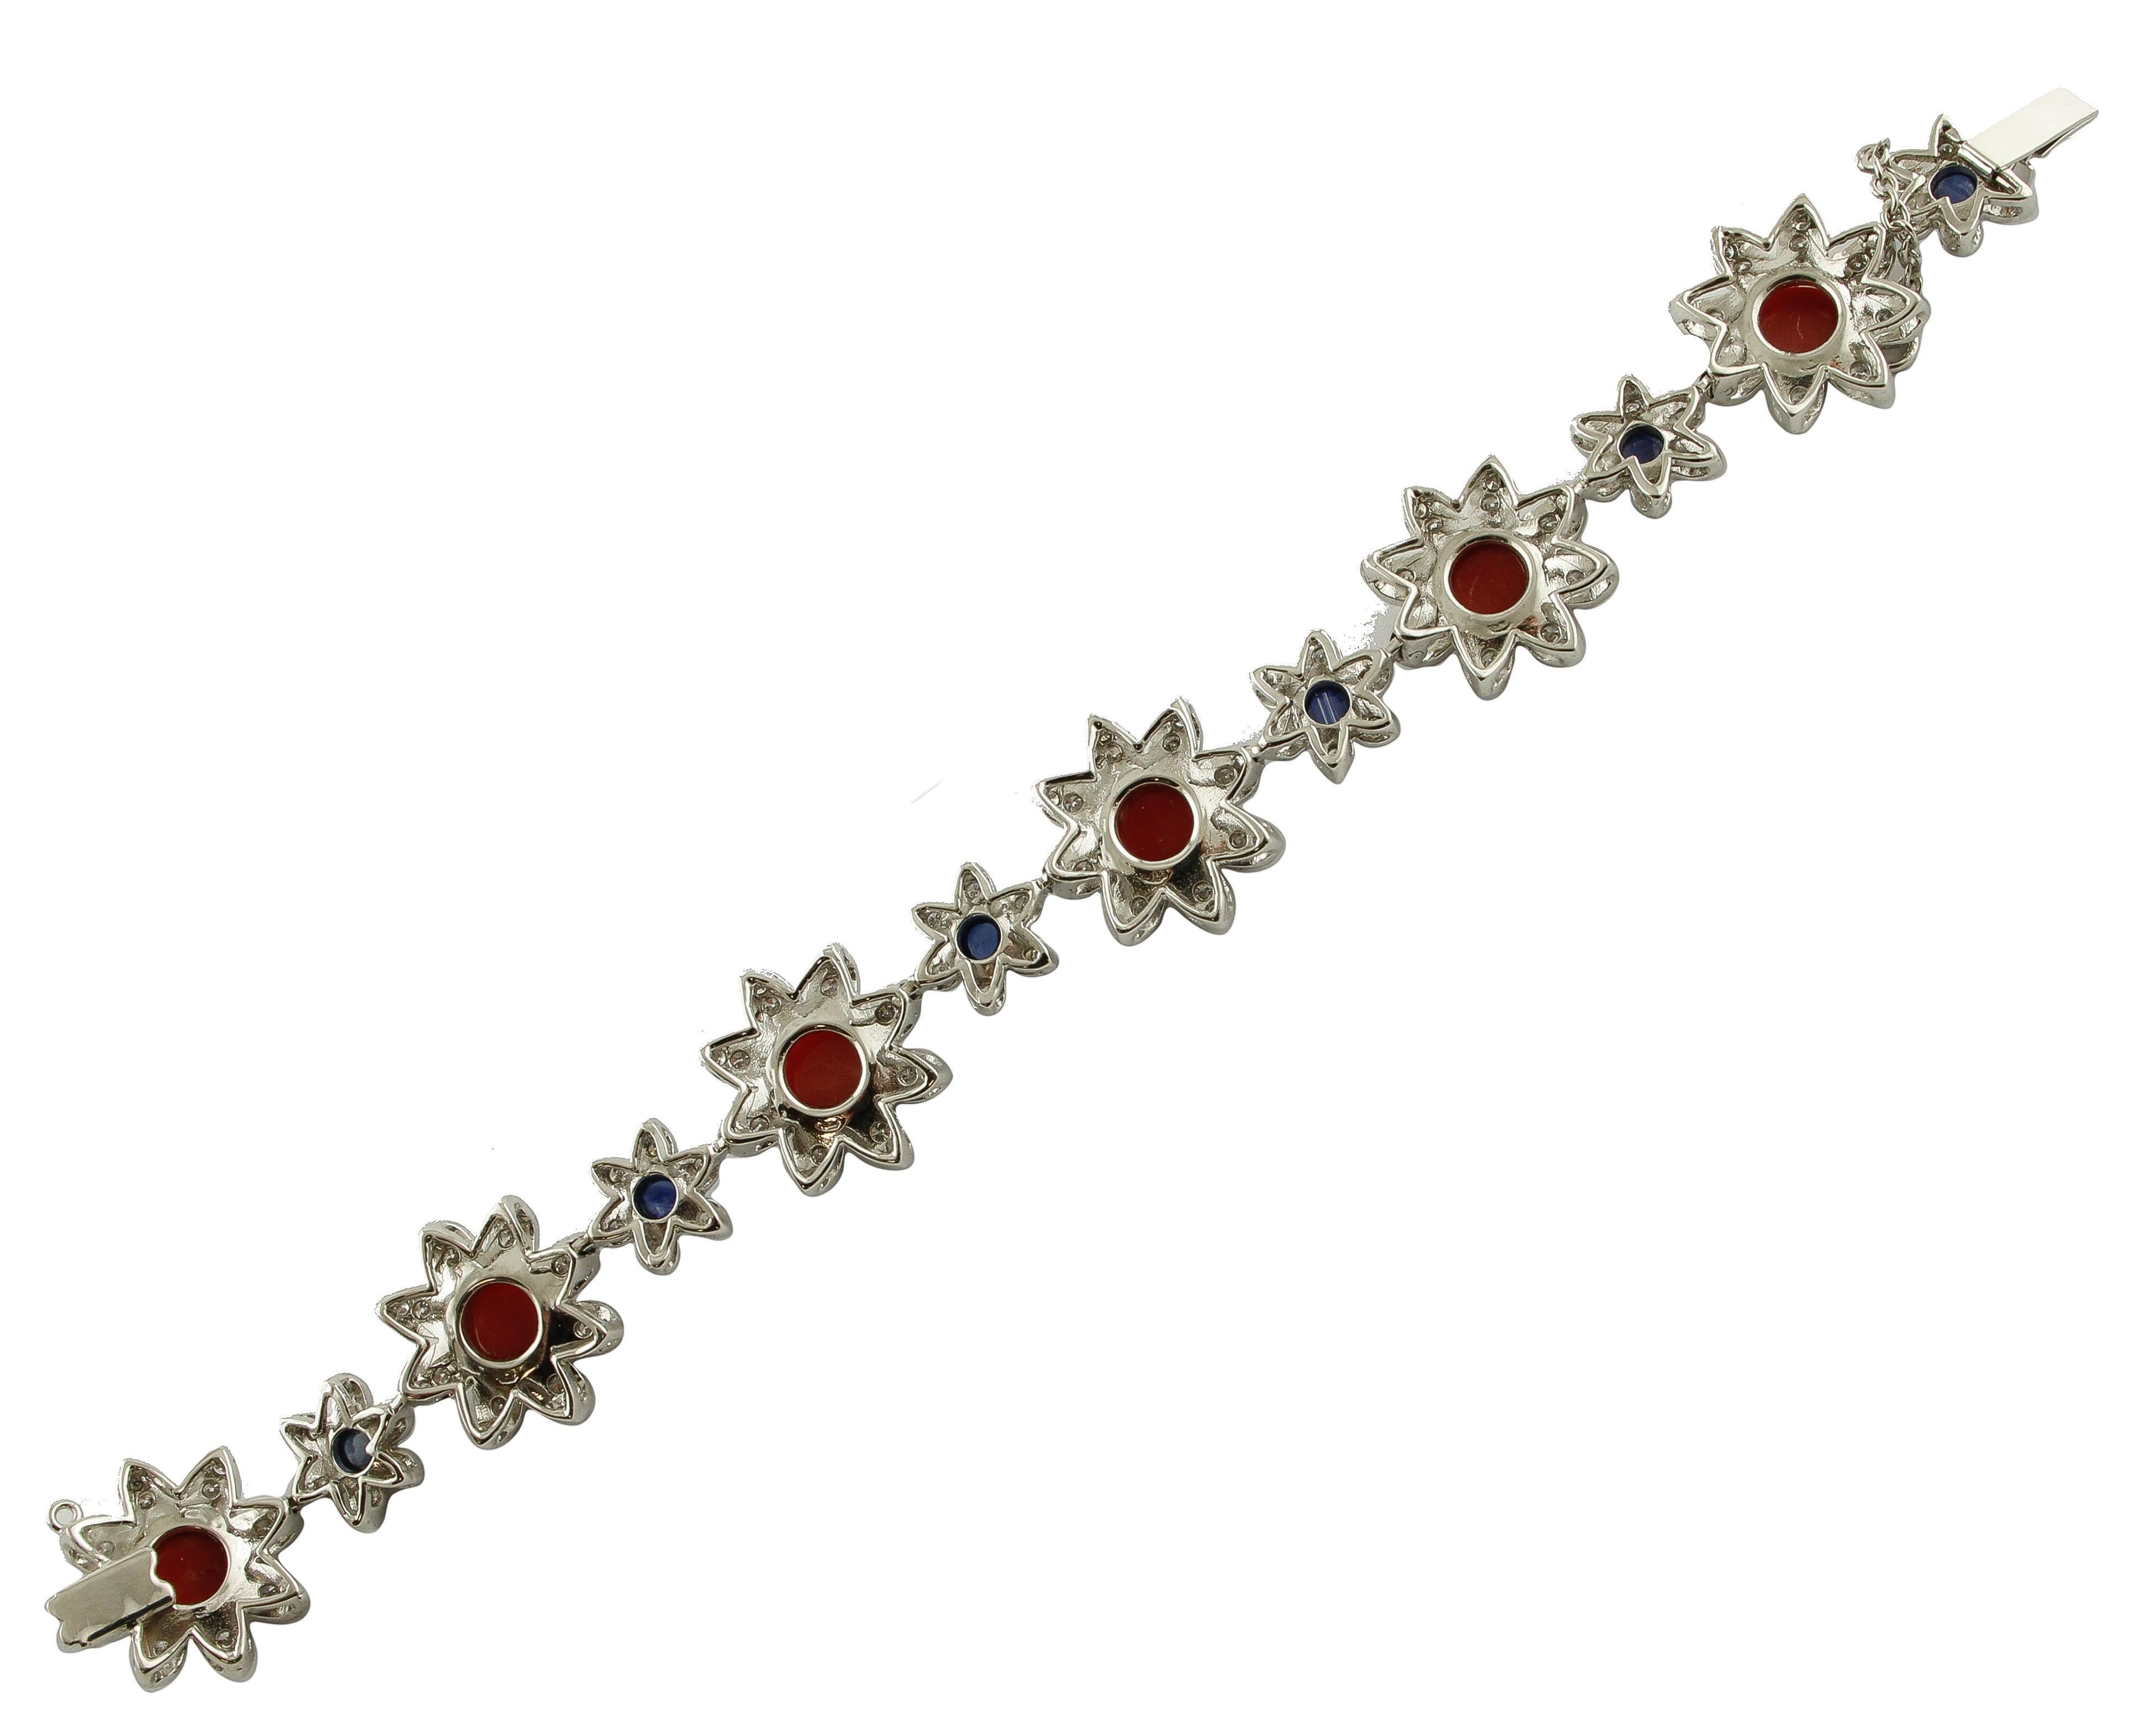 Brilliant Cut Red Corals, Diamonds, Blue Sapphires, 14 Karat White Gold Link Bracelet For Sale